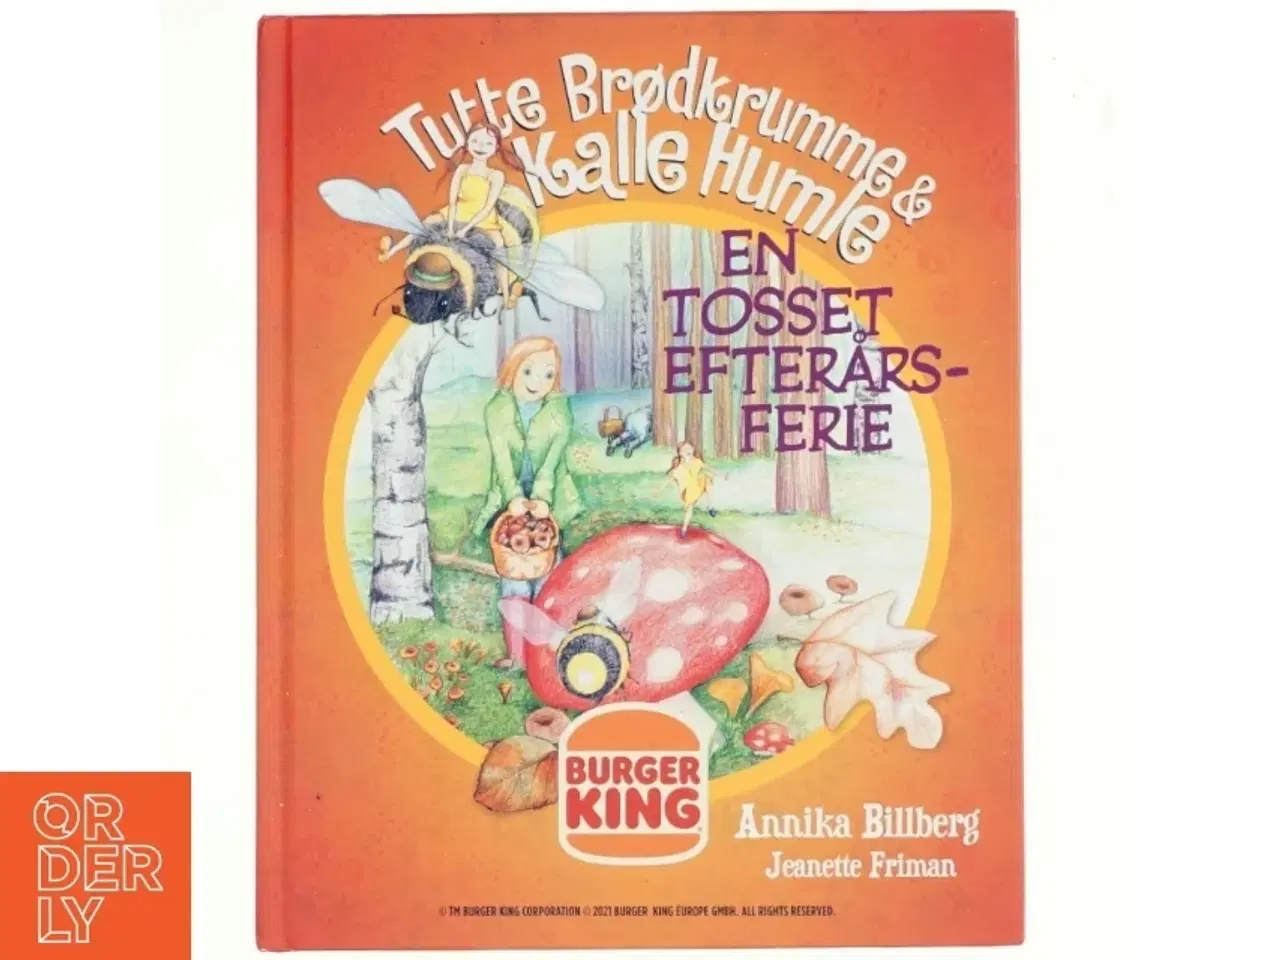 Billede 1 - Tutte Brødkrumme & Kalle Humle - En tosset efterårsferie af Annika Billberg (bog)